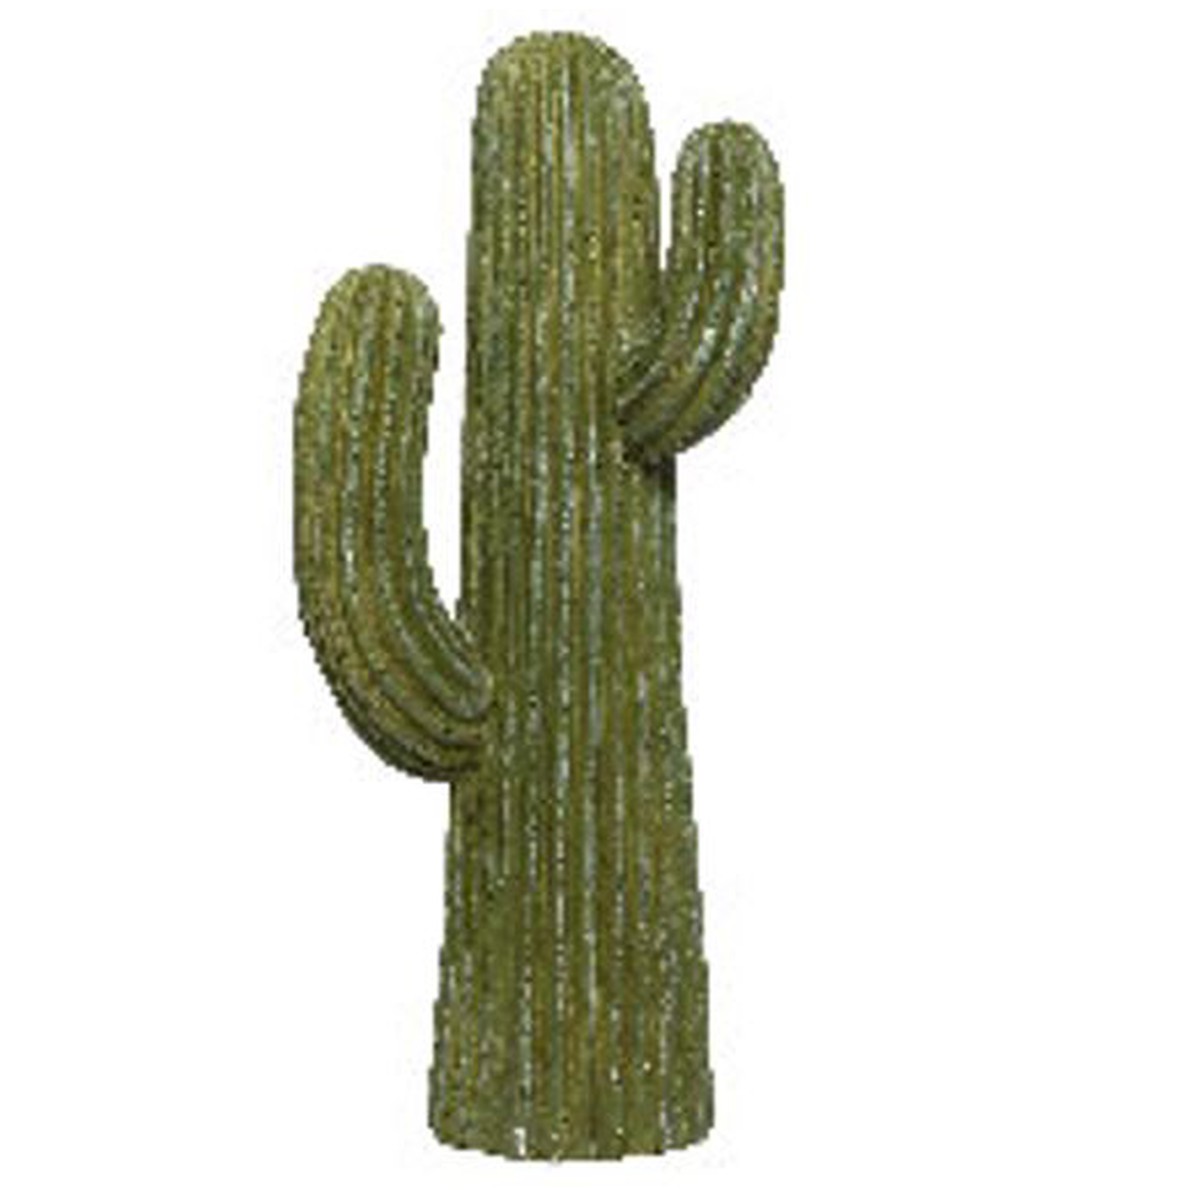   cactus Deco. 40x28x124cm Vert mousse 40x28x124cm